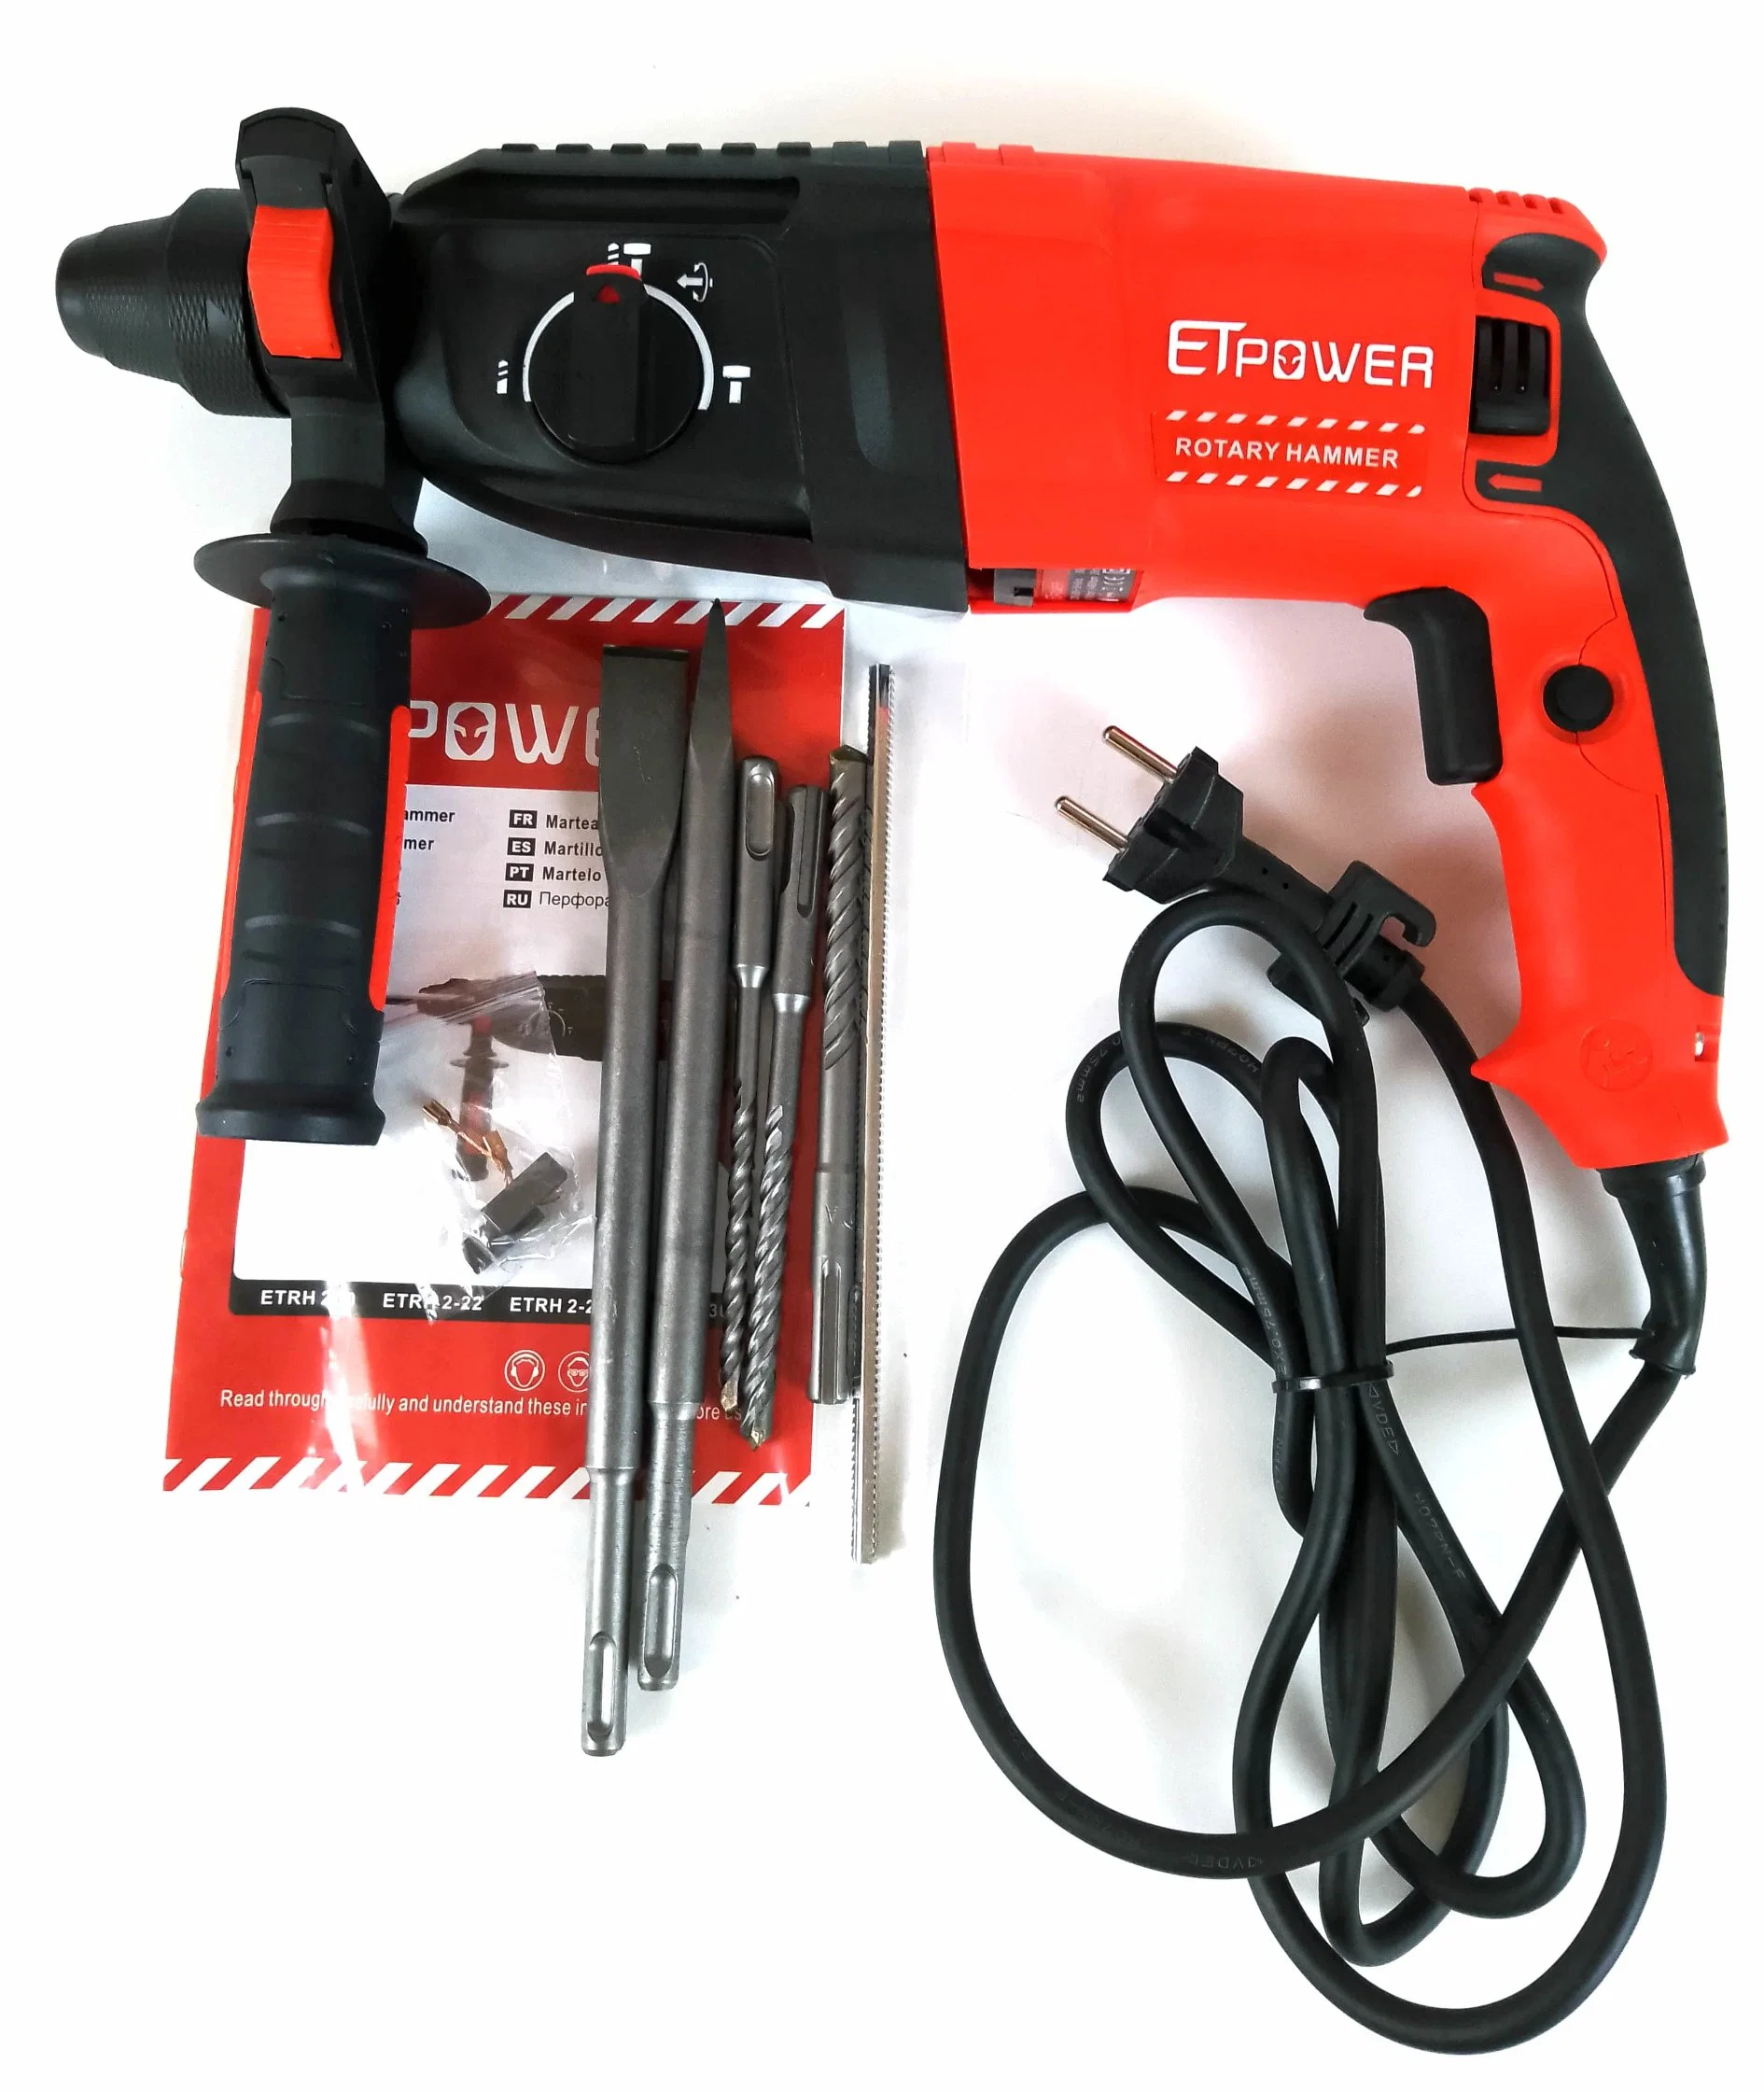 La calidad de experto Etpower herramientas eléctricas de bajo ruido de demolición rotativos eléctricos Taladradora martillo